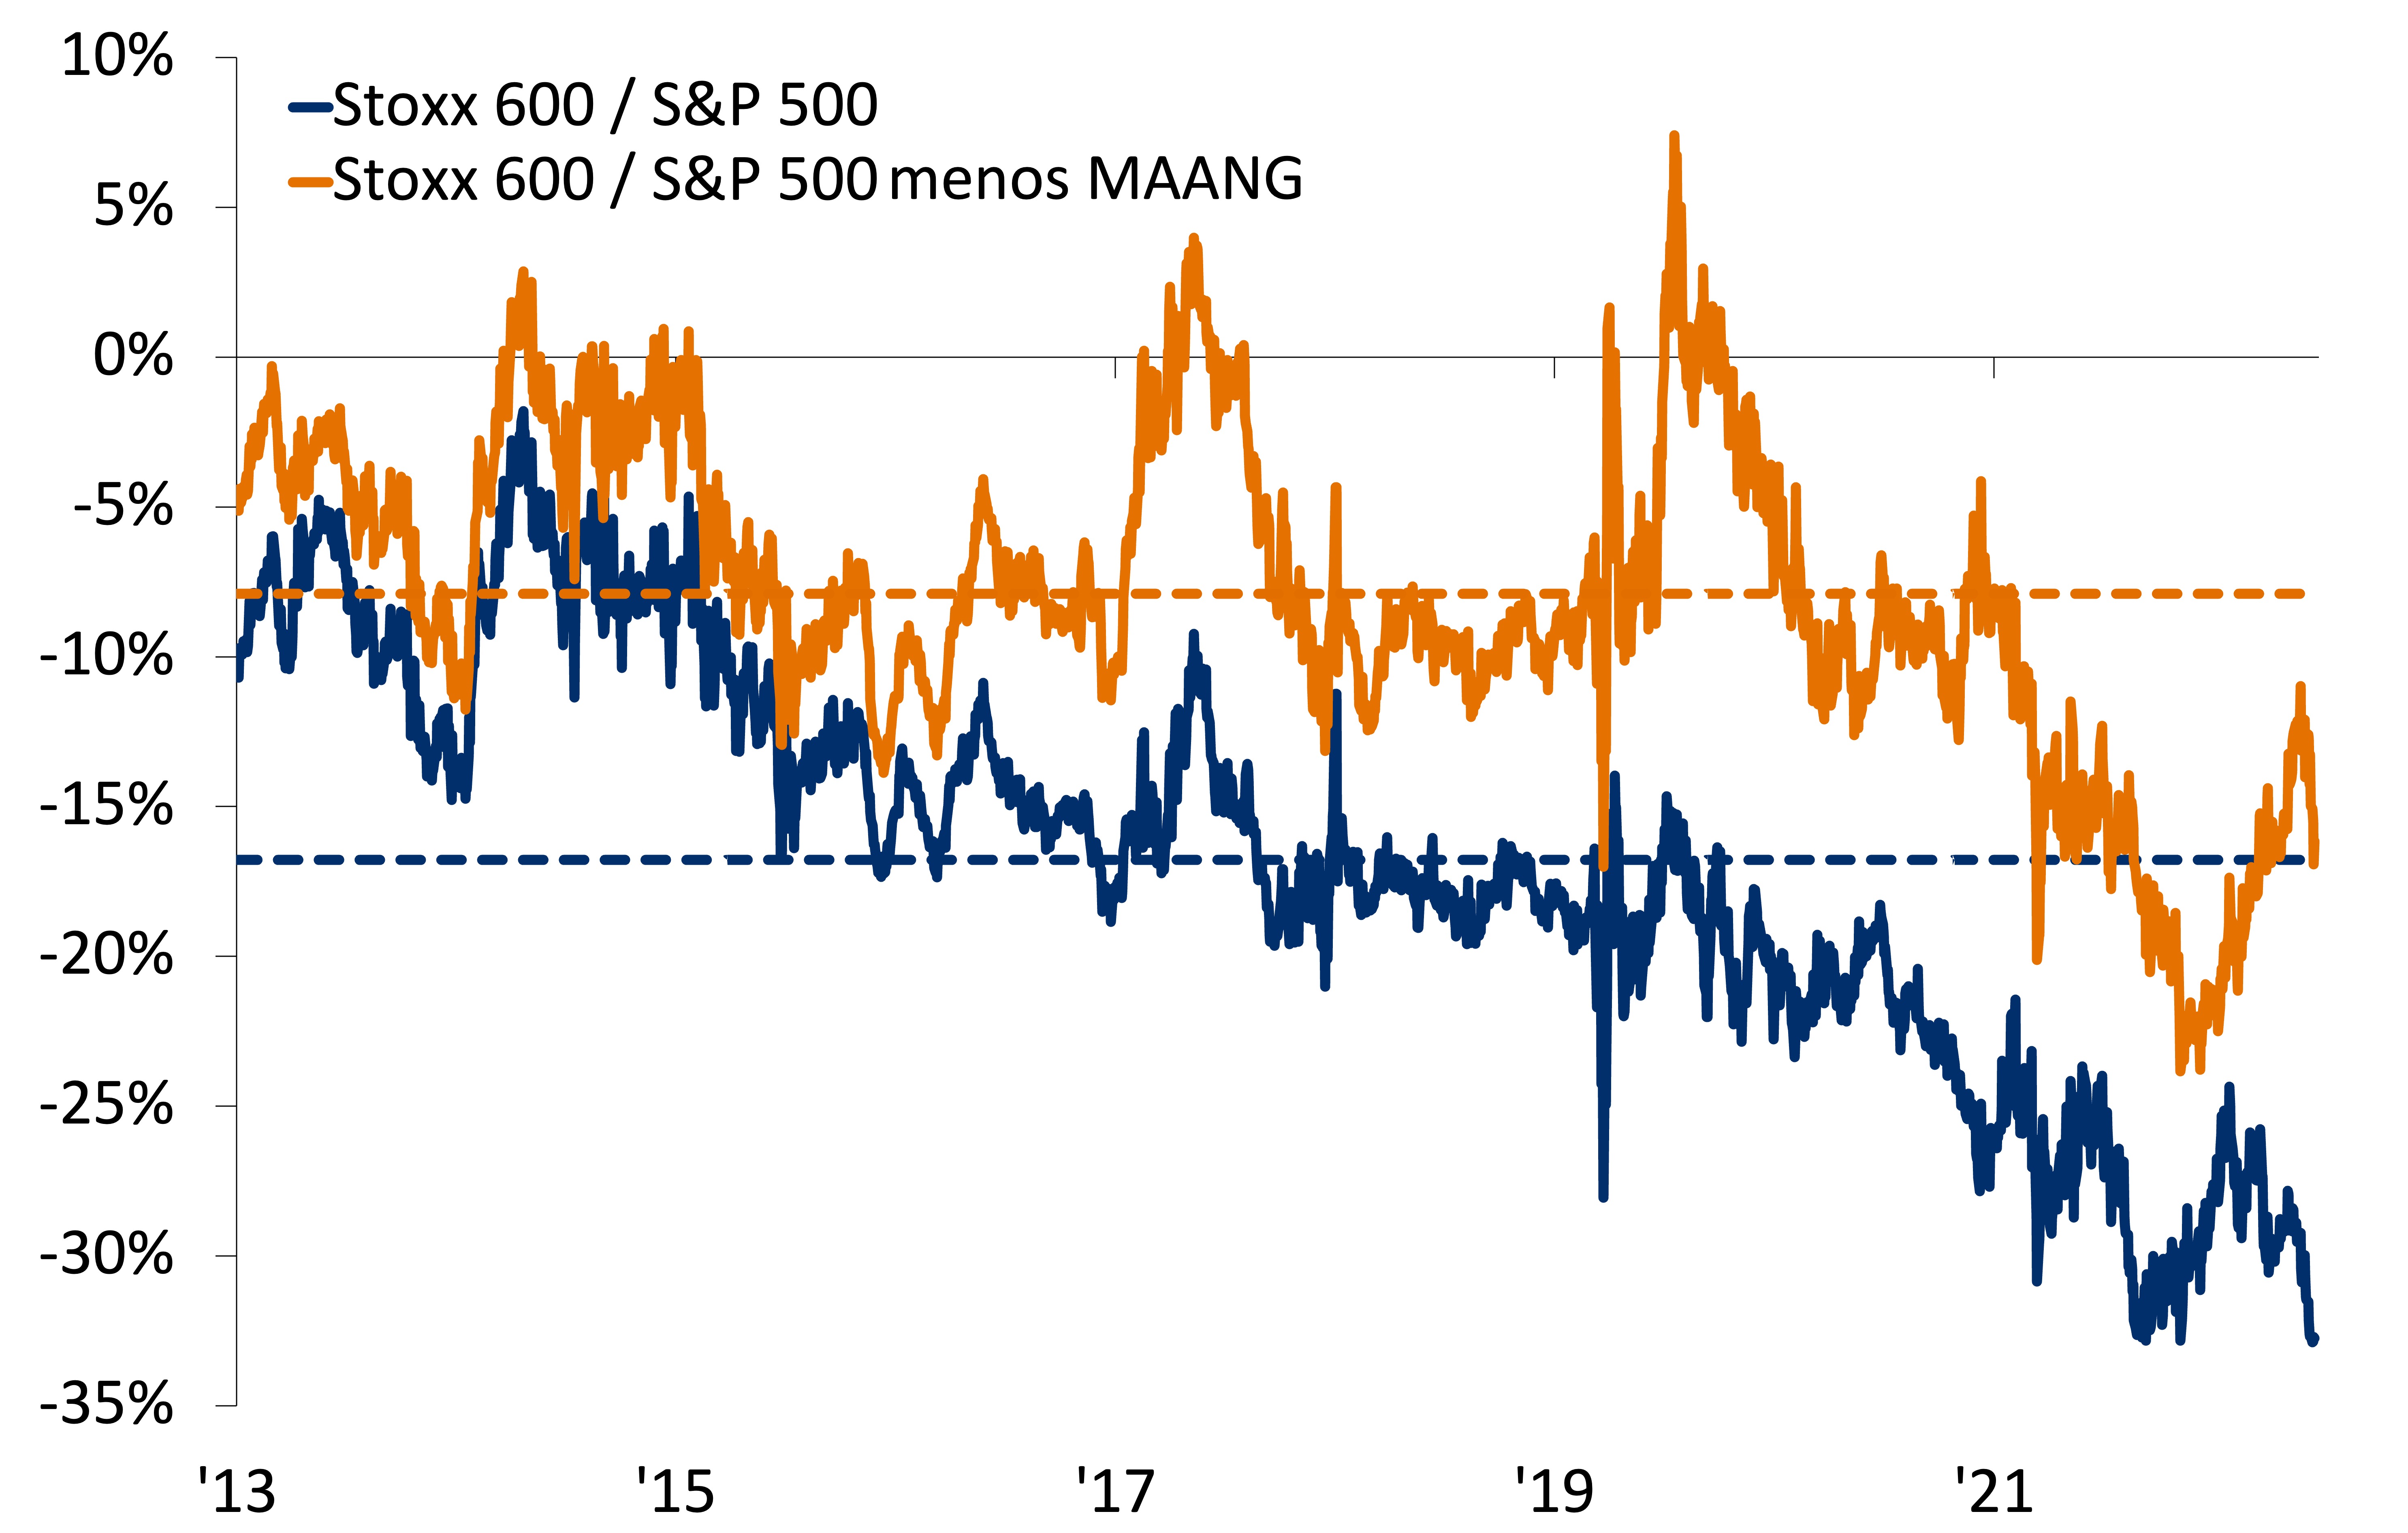 Este gráfico muestra la relación precio/ganancia a 12 meses del Stoxx 600 frente al S&P 500 y al S&P 500 menos MAANG (Microsoft, Apple, Amazon, NVIDIA, Google).